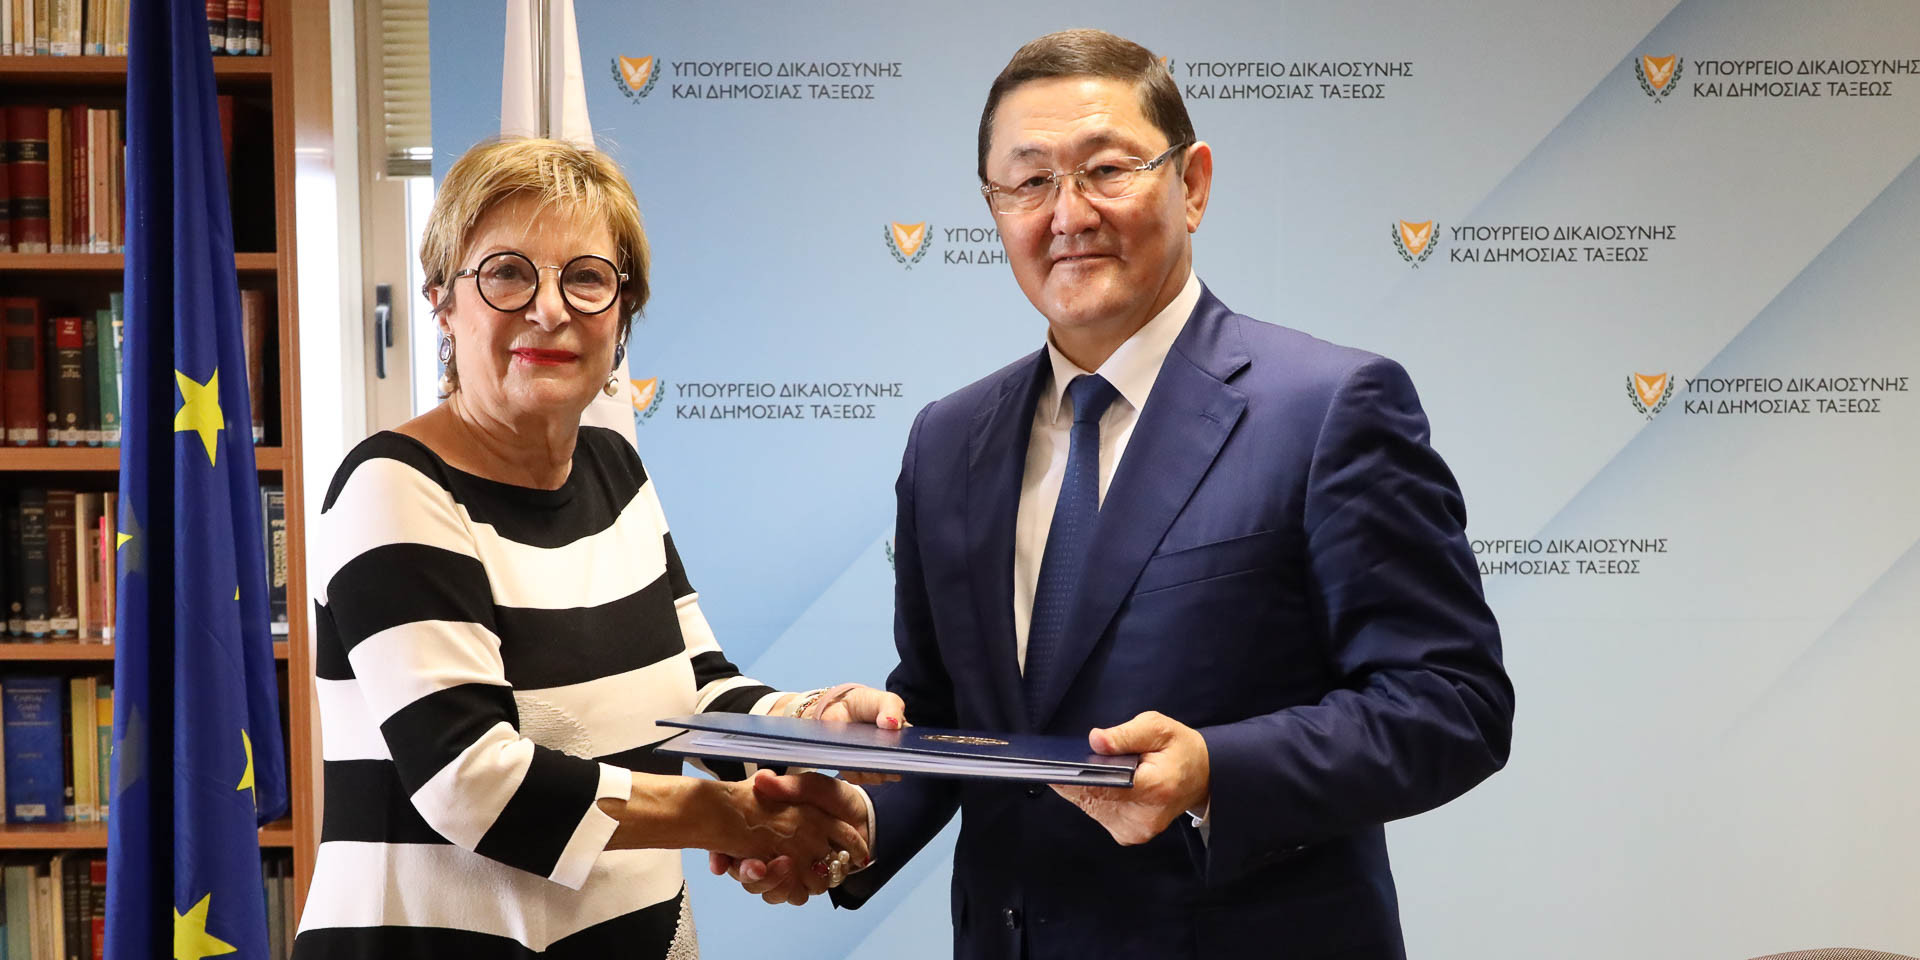 Между Казахстаном и Кипром подписаны договора об экстрадиции разыскиваемых лиц, а также об оказании правовой помощи  по уголовным делам